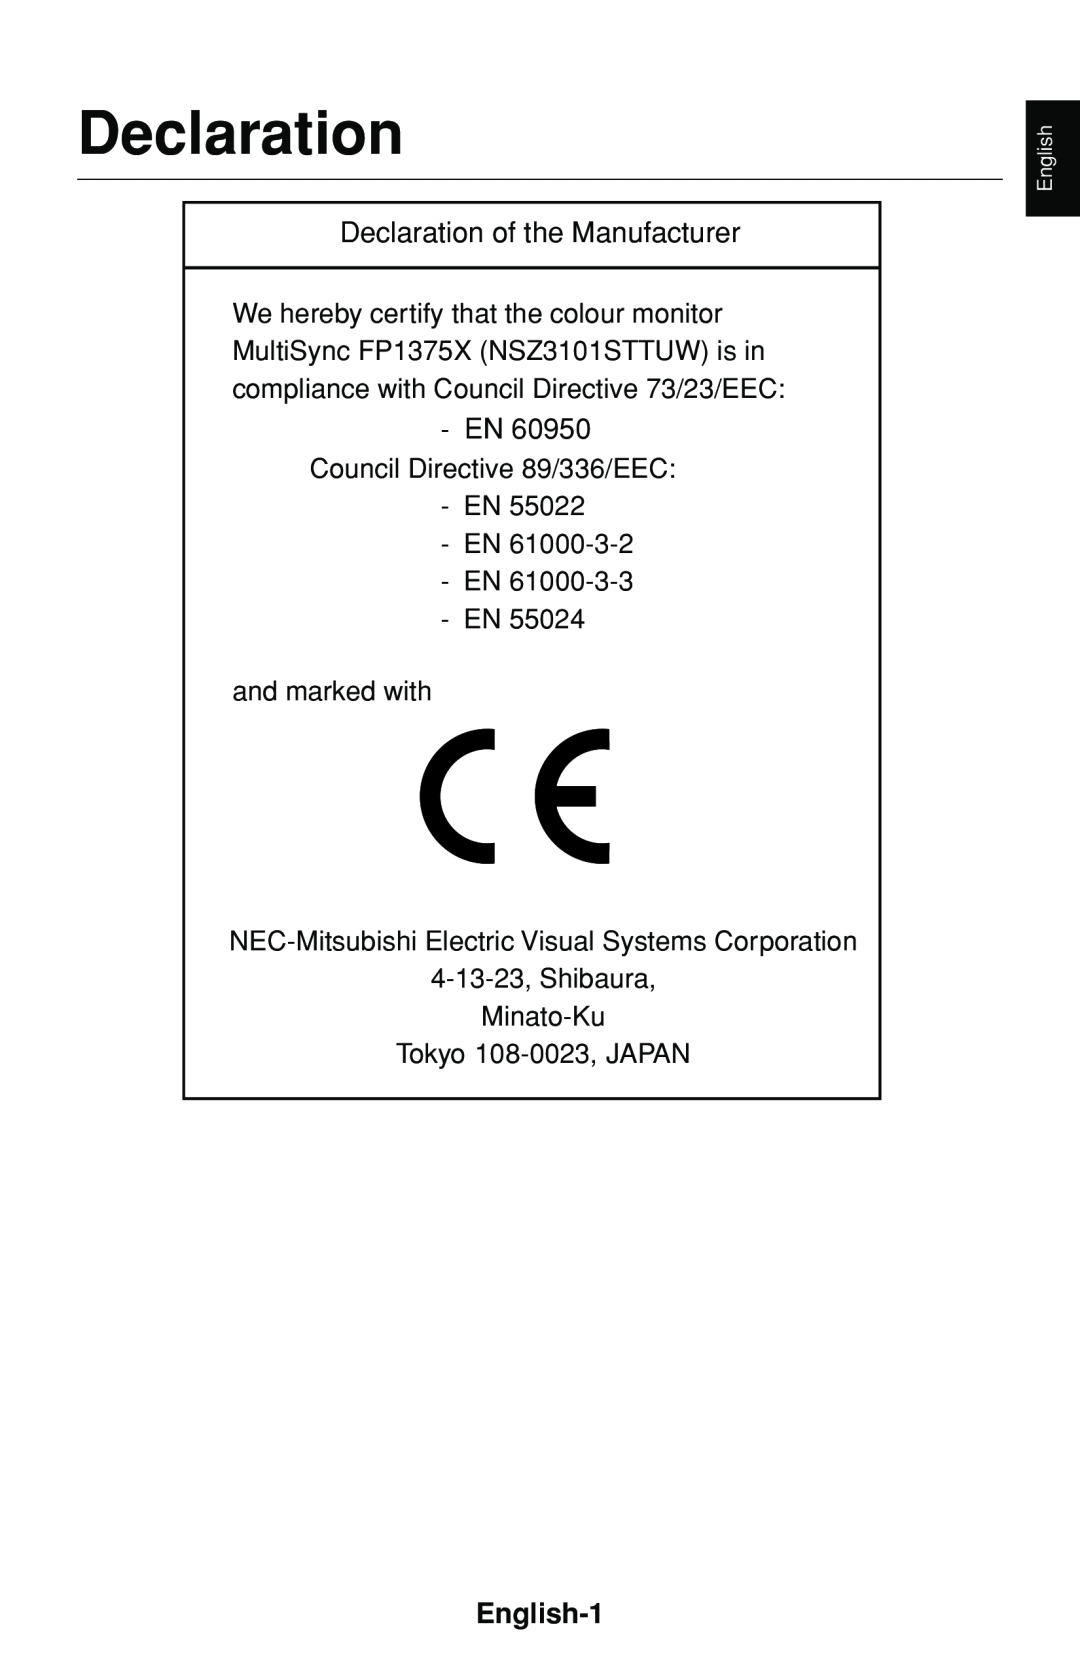 NEC FP1375X user manual English-1, Declaration, Council Directive 89/336/EEC EN EN EN EN, and marked with 